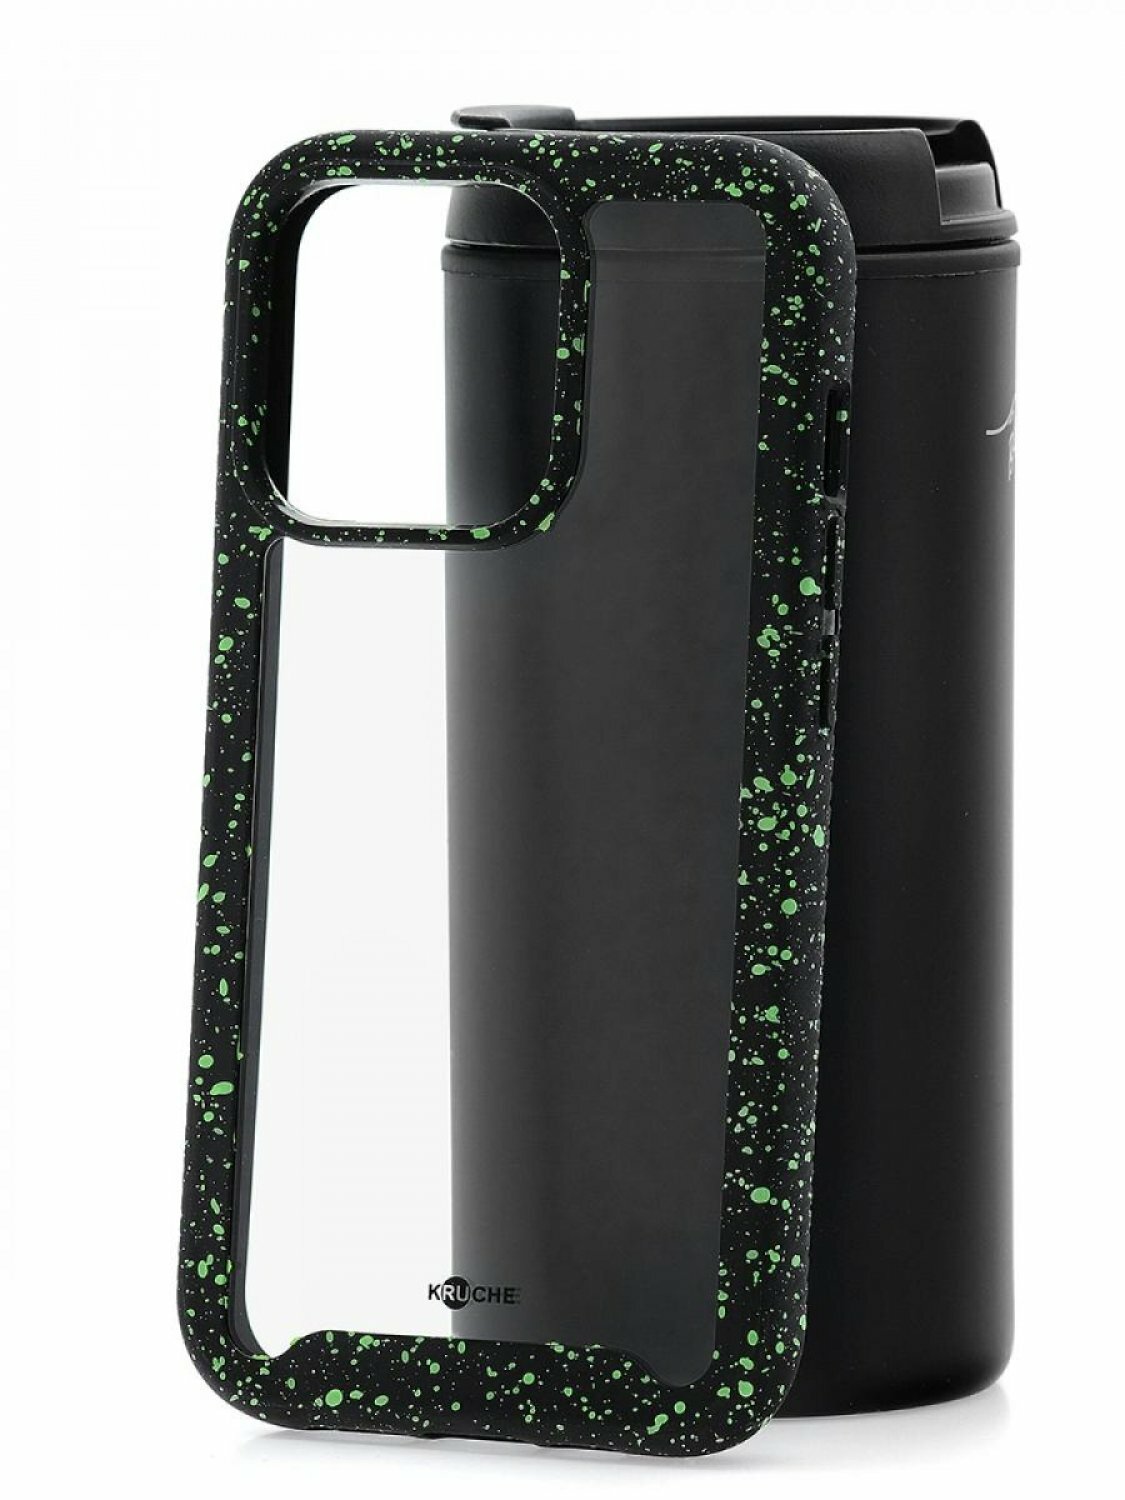 Чехол для iPhone 13 Pro Kruche Armor Splash Black, противоударная накладка, защитный силиконовый бампер 360, прозрачный ударопрочный кейс, защита камеры